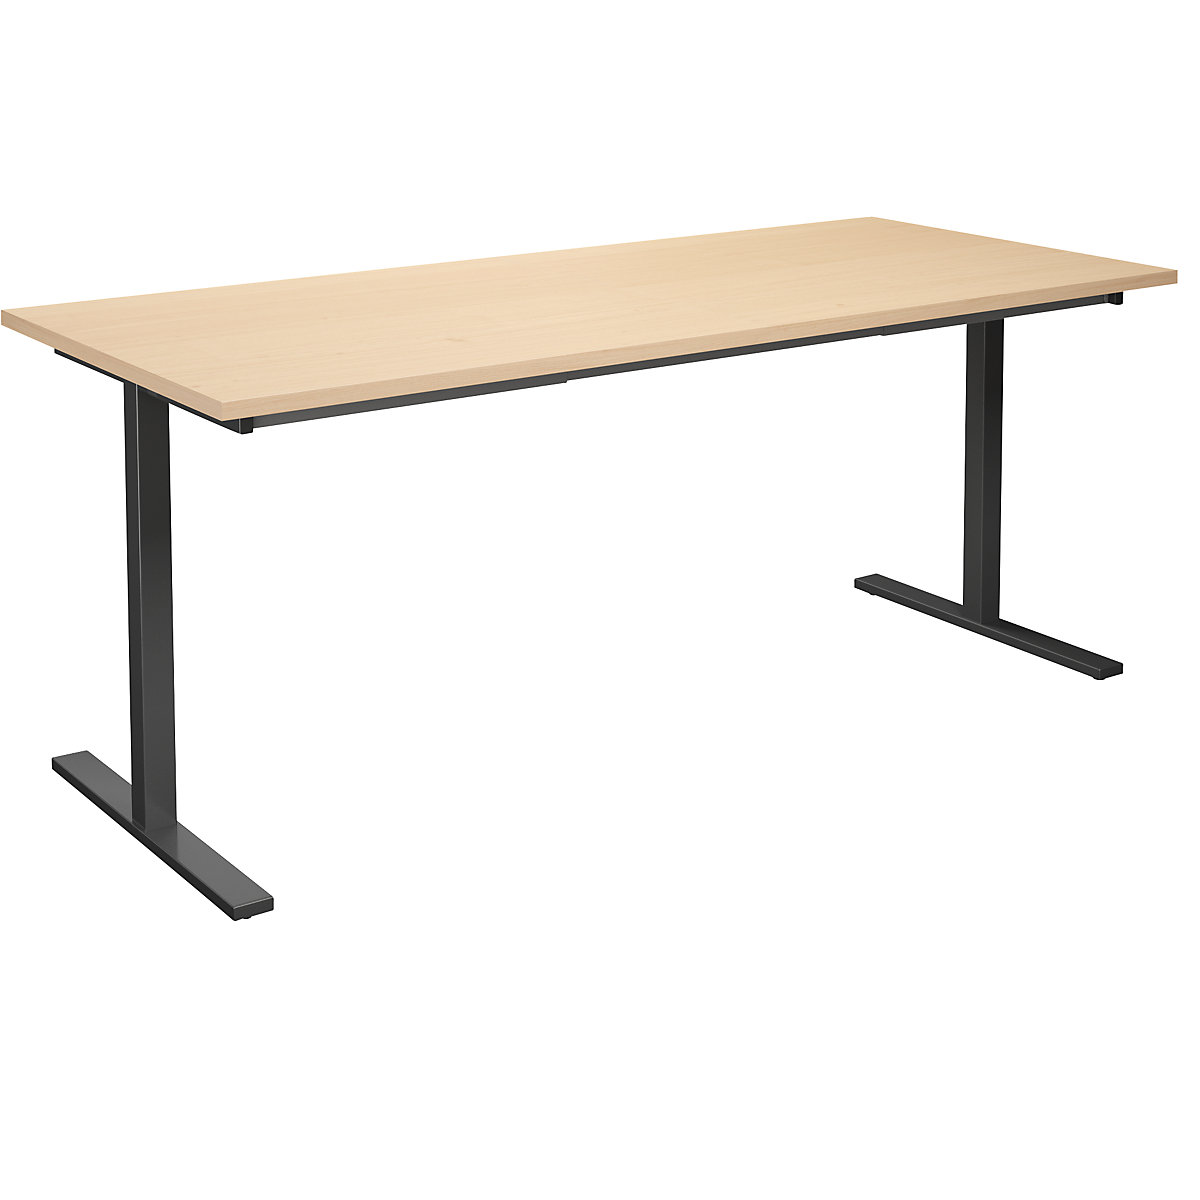 DUO-T multi-purpose desk, straight tabletop, WxD 1800 x 800 mm, birch, black-14